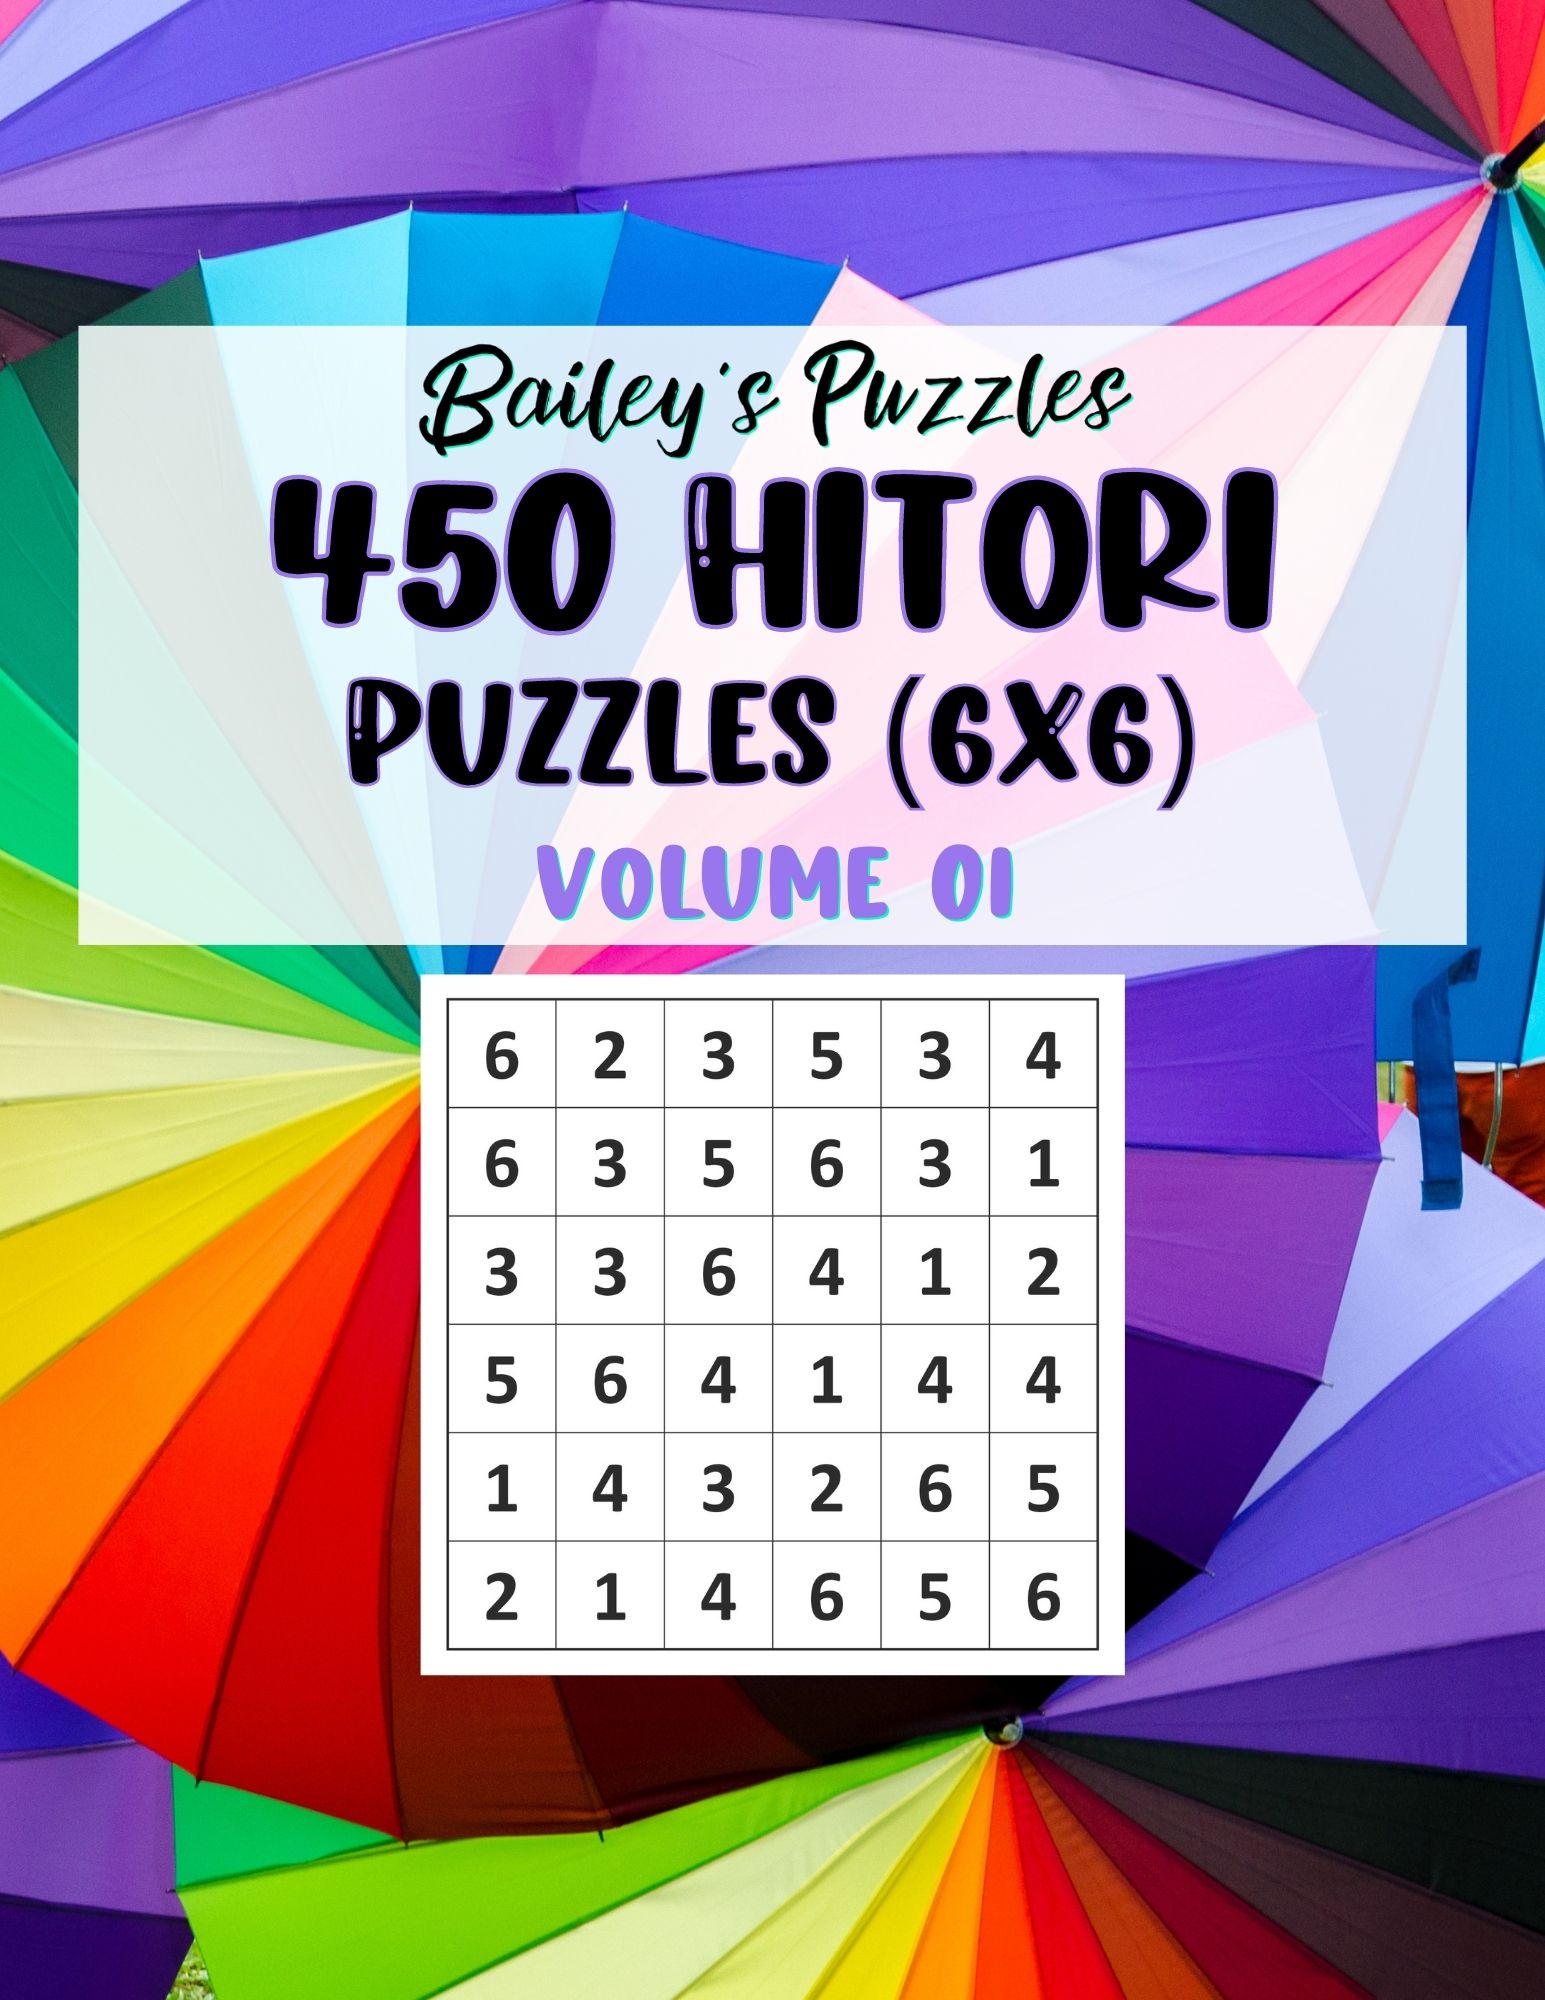 Buy Now: 450 Hitori Puzzles 6x6